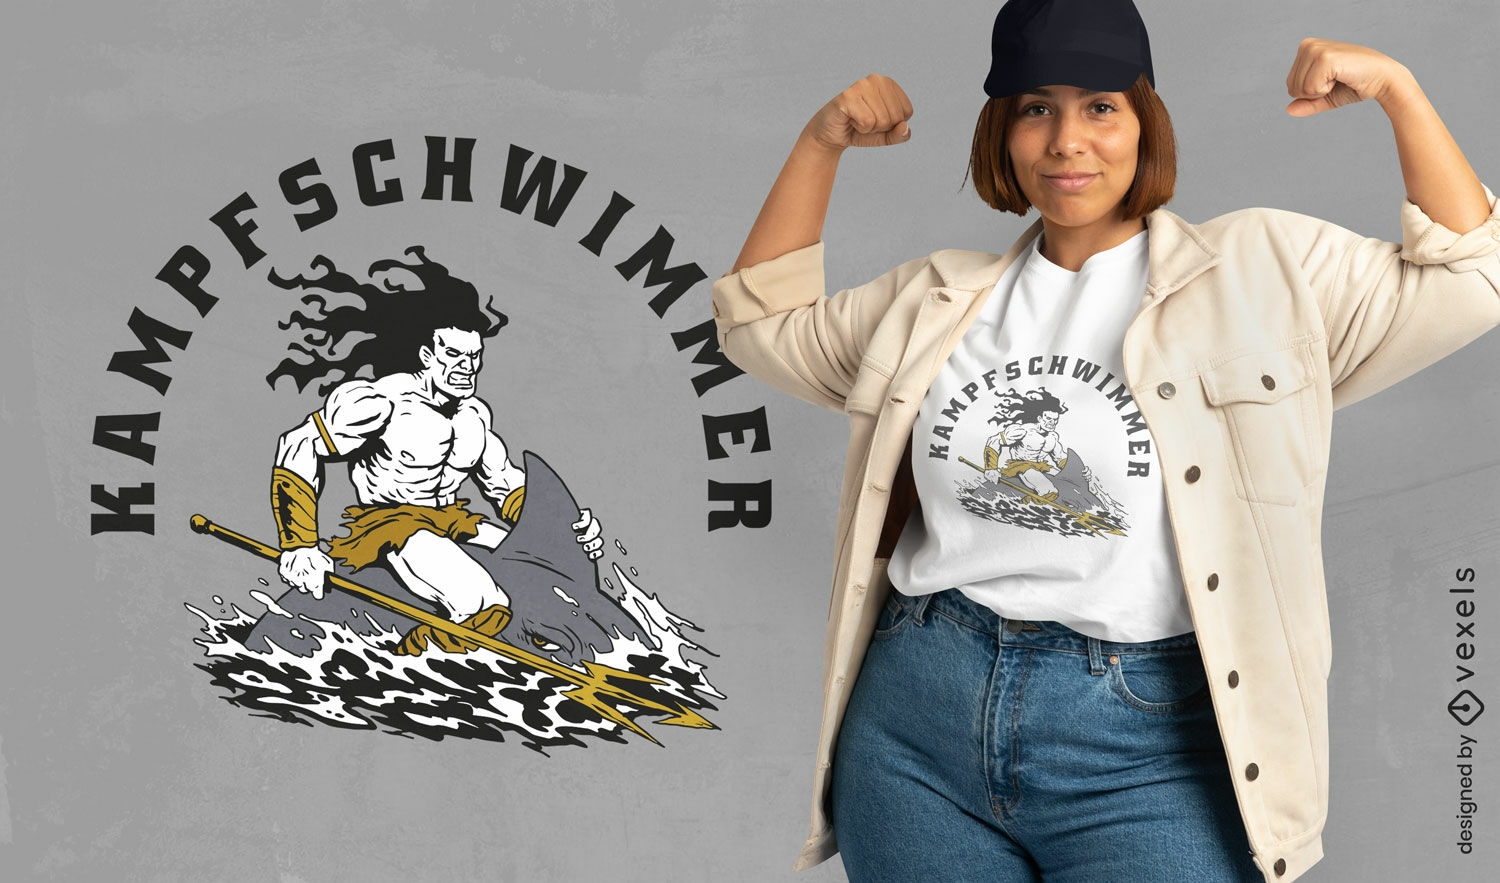 Kampschwinner t-shirt design